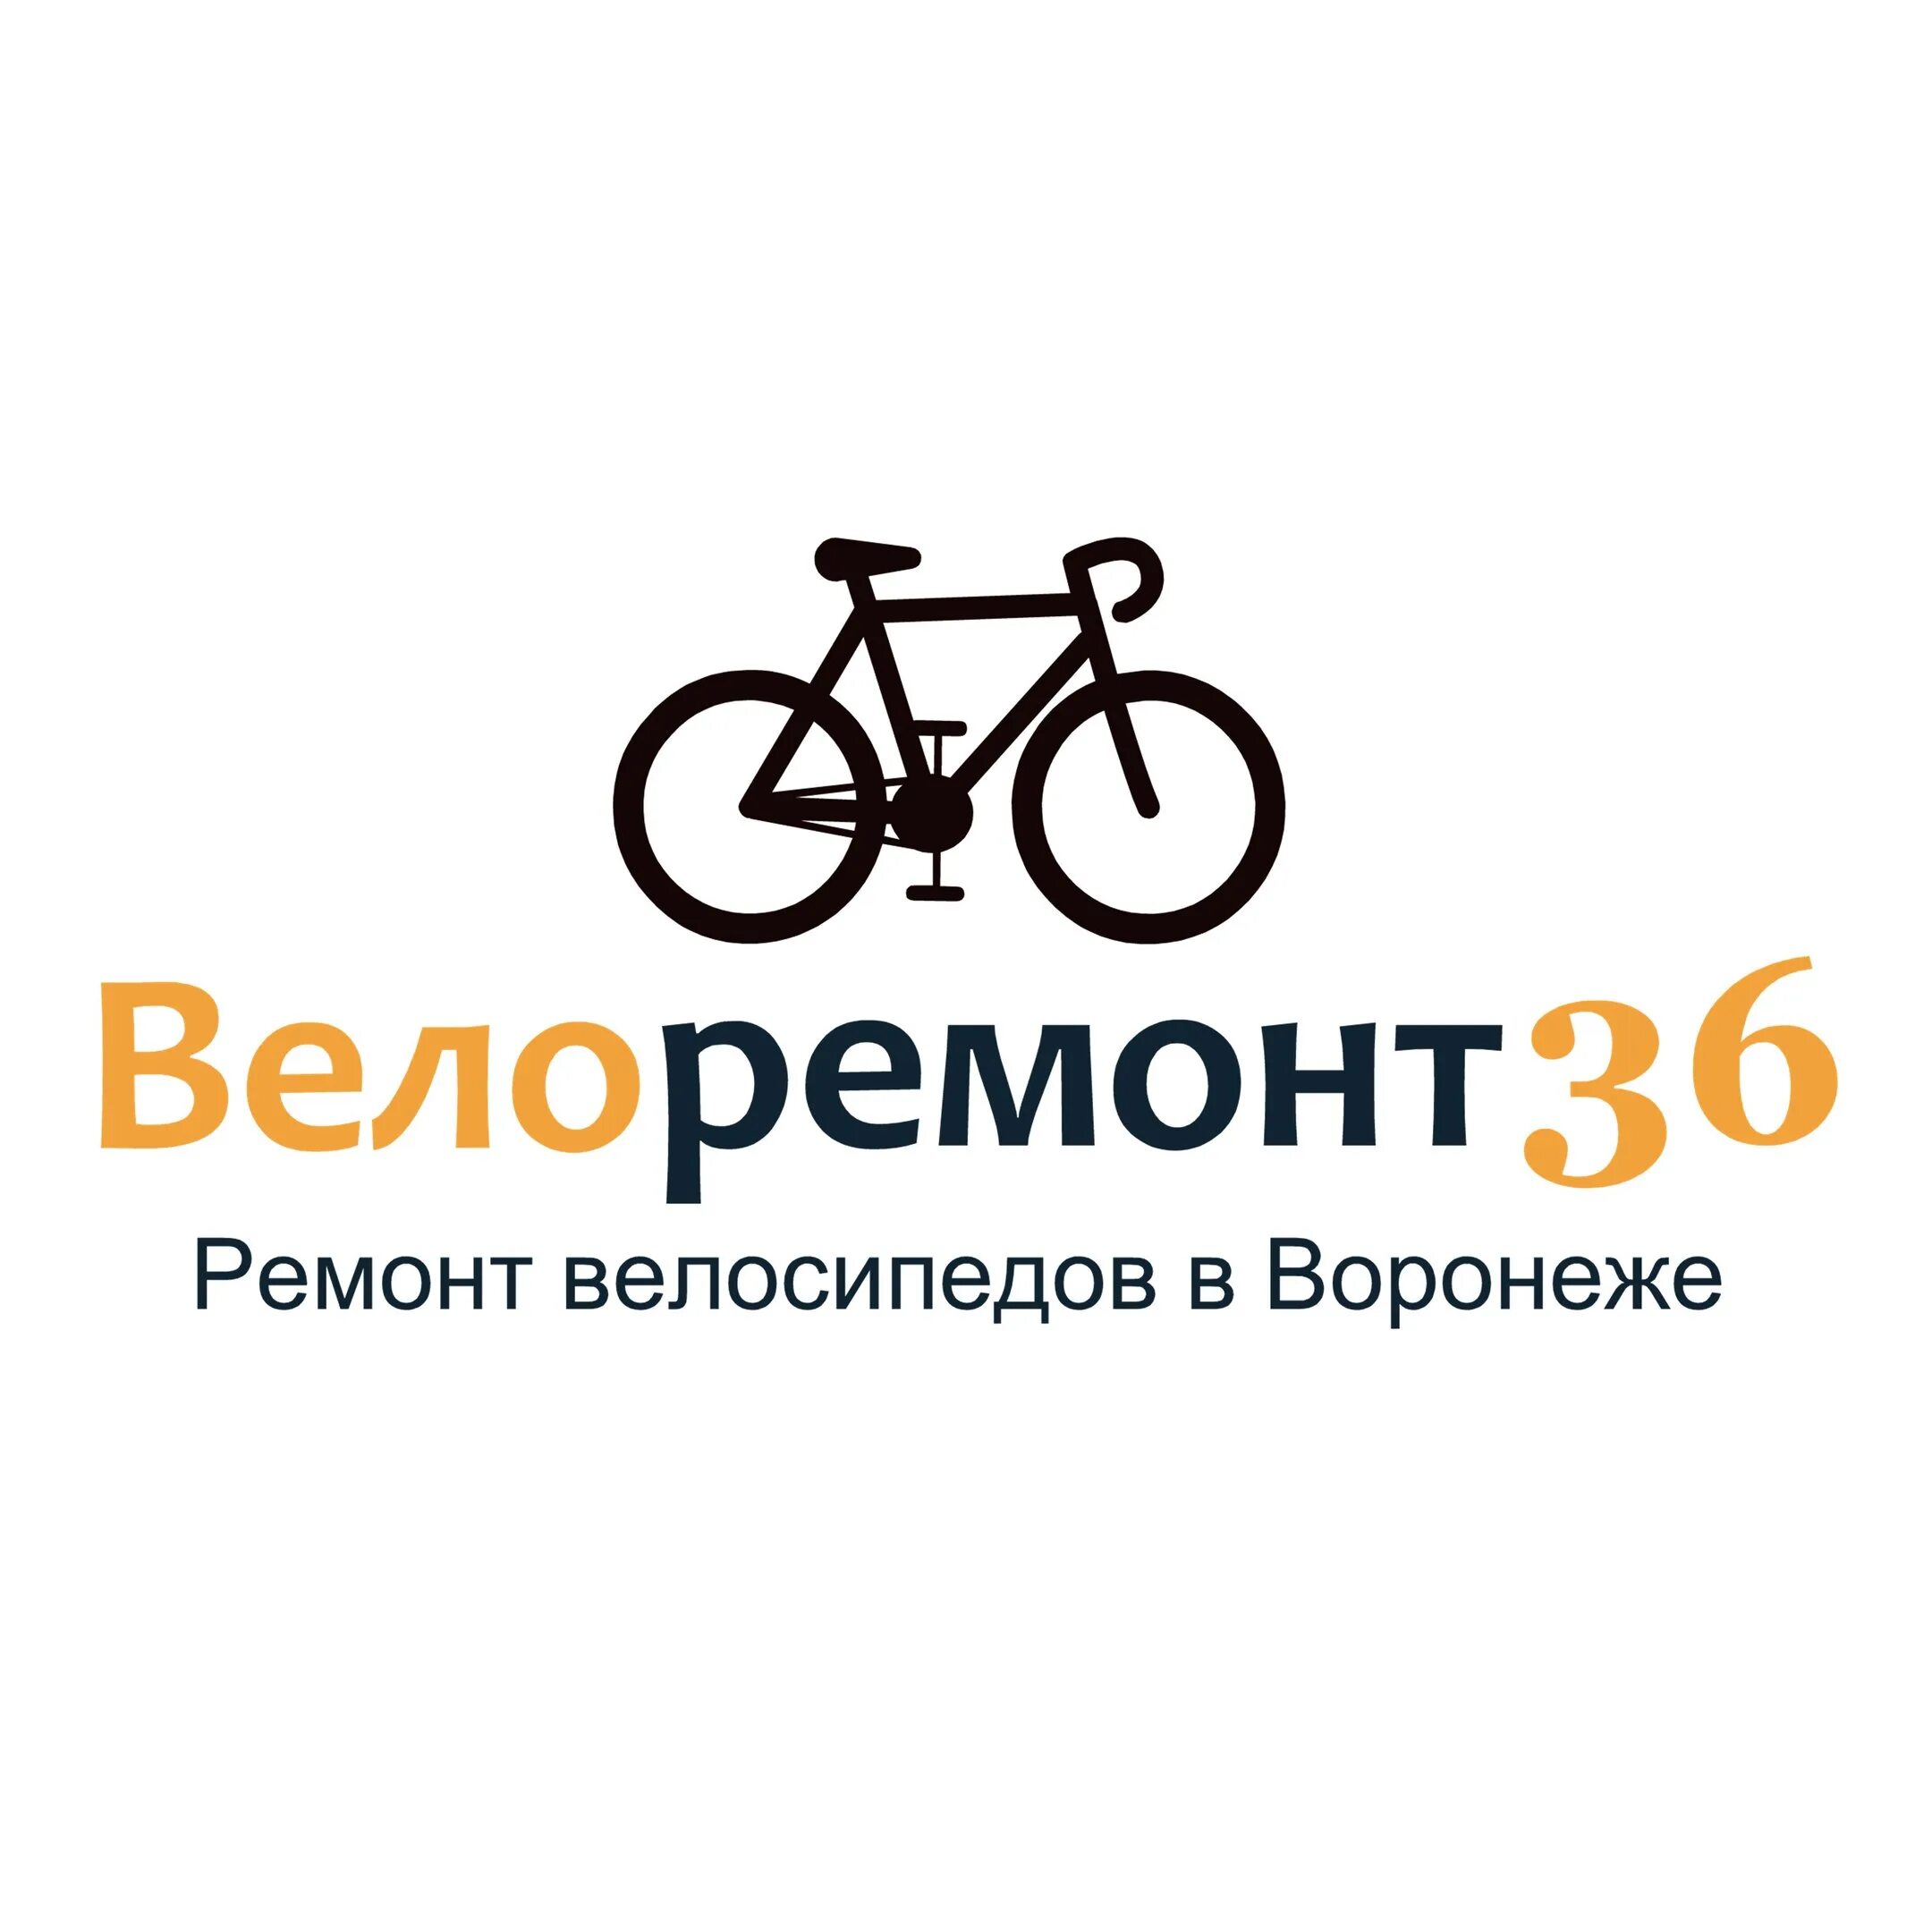 Ремонт велосипедов в москве рядом со мной. Велоремонт. ВЕЛОСТРАНА логотип. Велоремонт реклама. Велоремонт логотип.